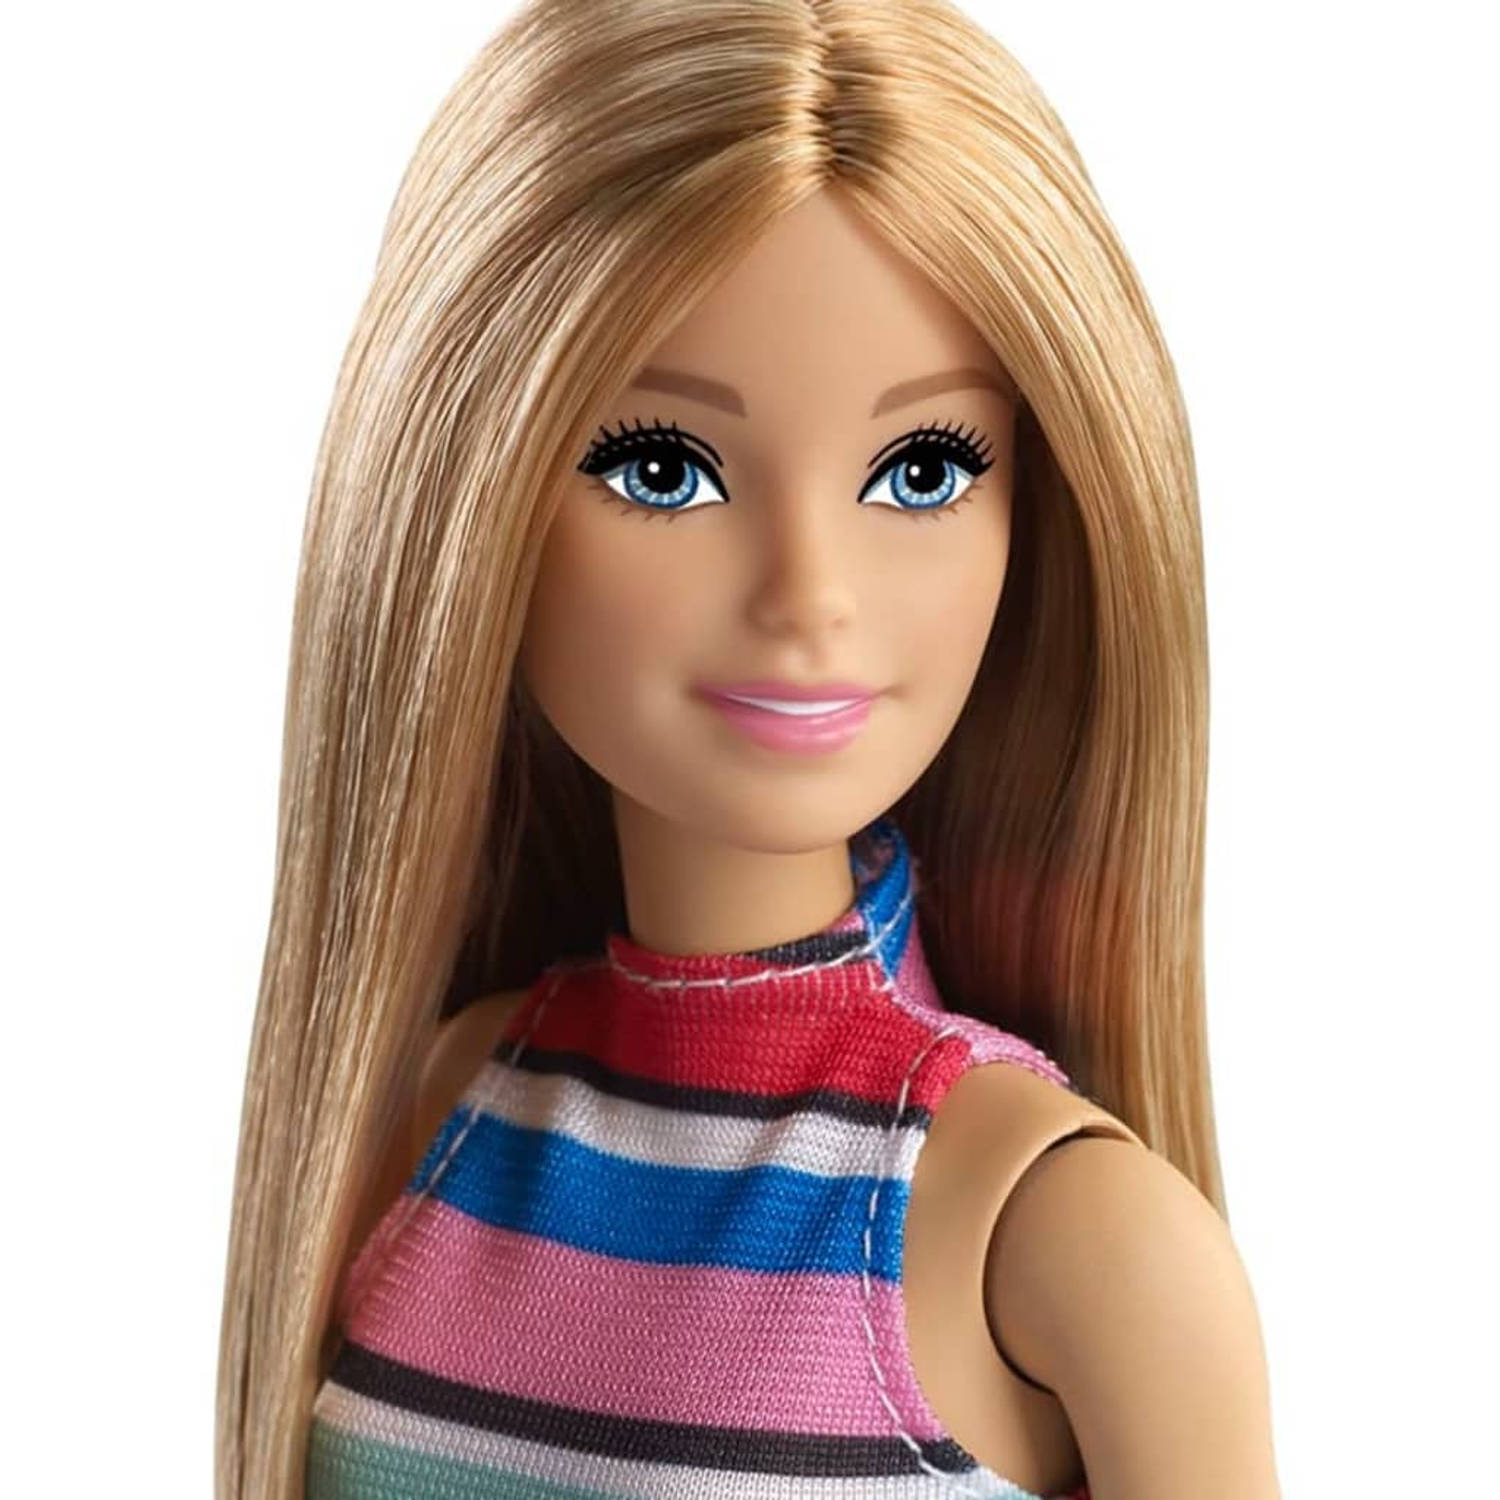 eigendom namens Boos worden Barbie Pop en accessoires | Blokker